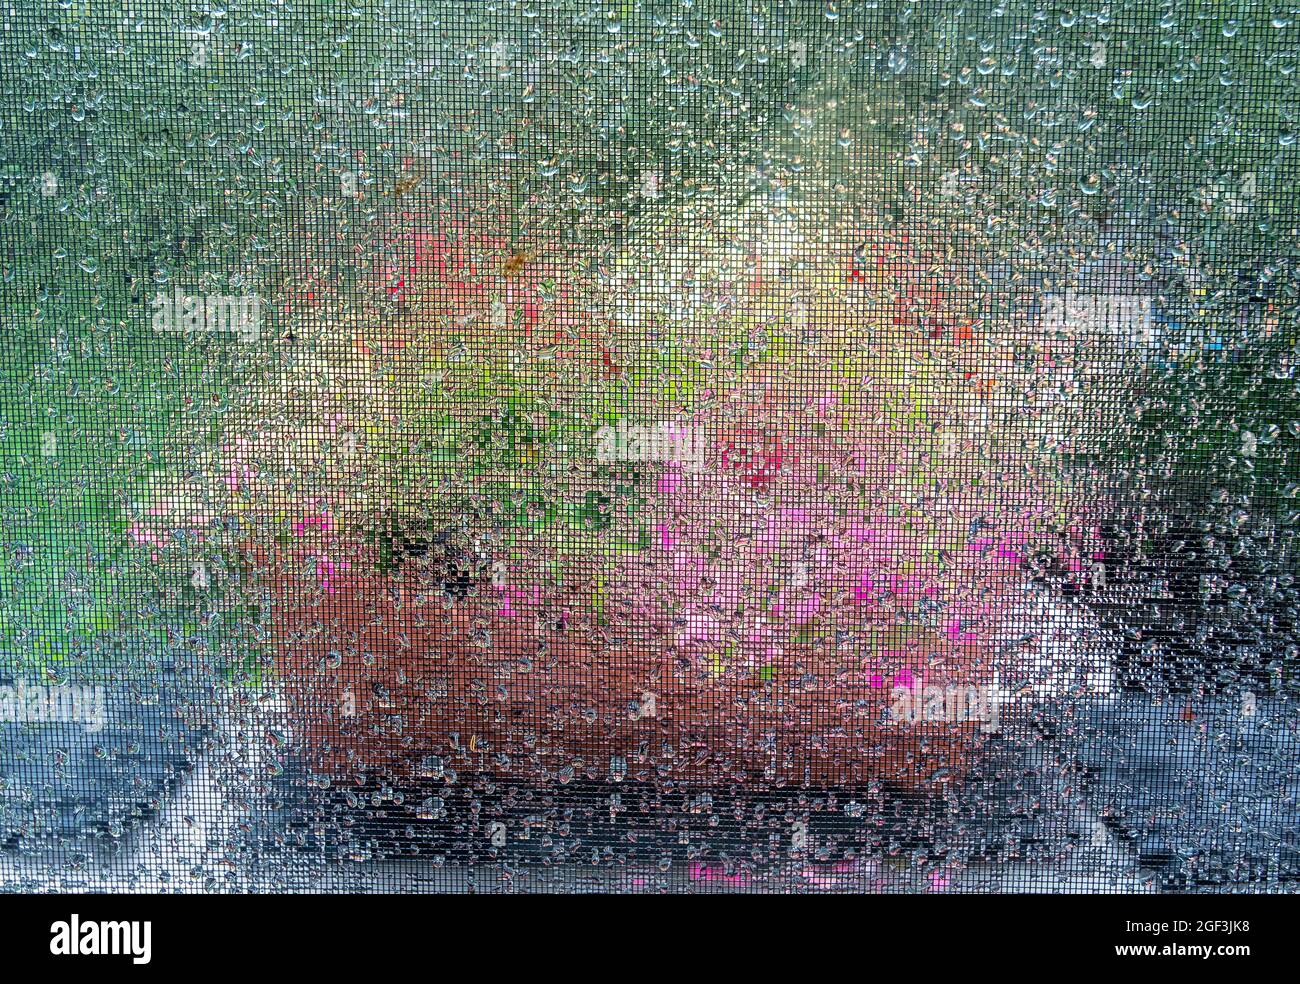 Fiori fotografati attraverso la finestra dopo la pioggia Foto Stock